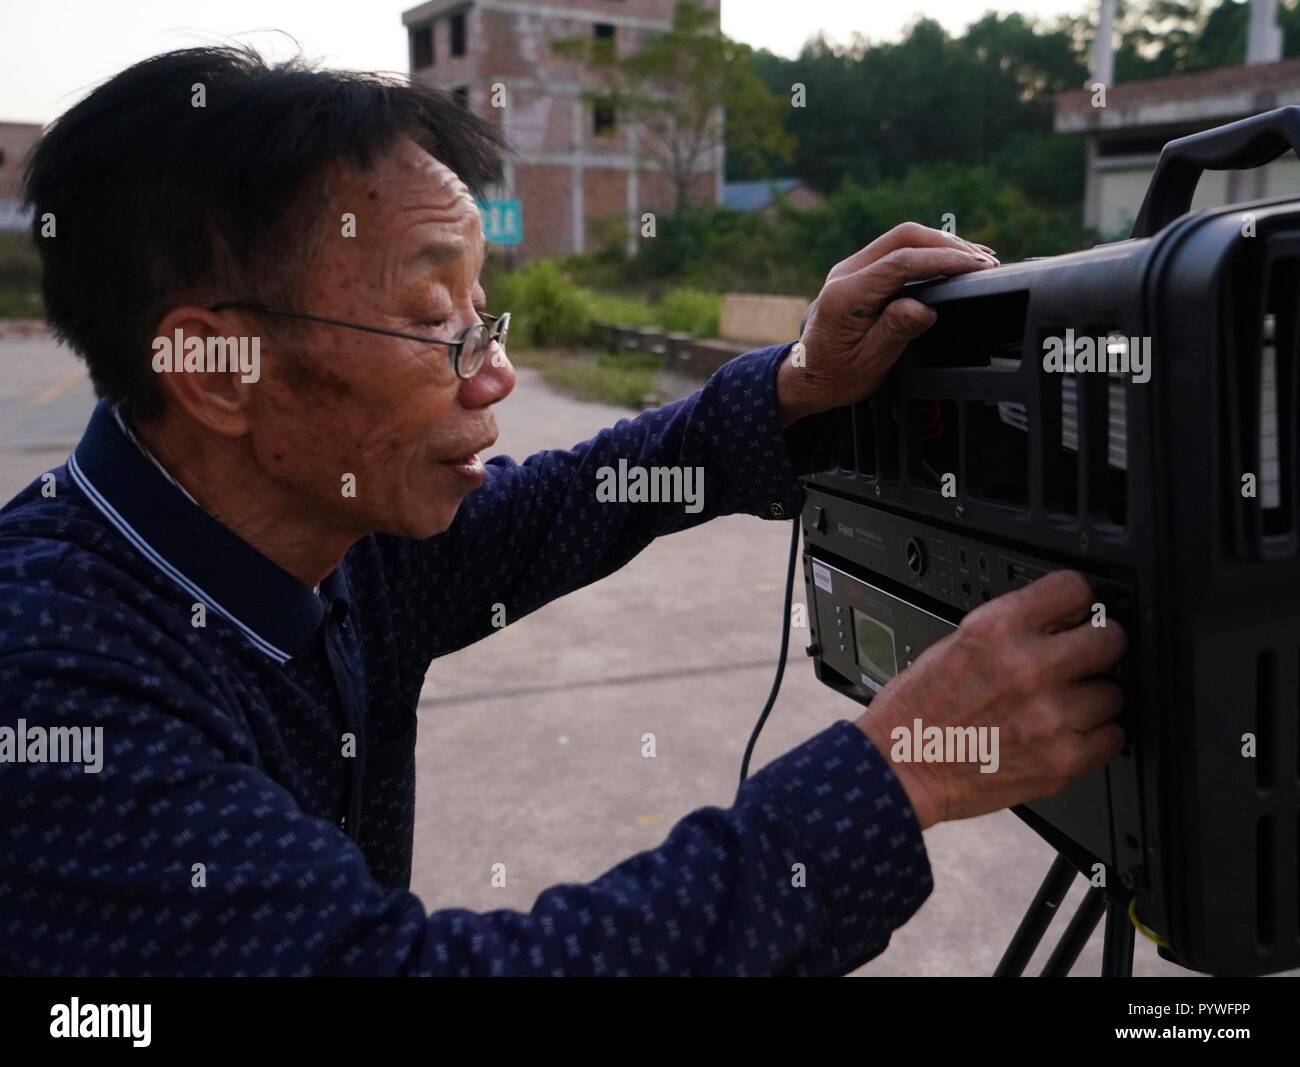 (181031) - YUDU, Oktober 31, 2018 (Xinhua) - zeng Jilian, einem 69 Jahre alten Film Filmvorführer, Tests der Film Projektion in Shanxia Dorf Yudu County, im Osten der chinesischen Provinz Jiangxi, Okt. 30, 2018. Zeng Jilian hatte, ein Film Filmvorführer geträumt, seit er ein Kind war. In 1975, seinem Traum wurde wahr, als er Mitglied der Film Projektion team von Kuantian Stadt in Yudu County wurde. Seitdem hat er in verschiedenen Dörfern und zahlreiche Filme für die Menschen vor Ort gezeigt. Jetzt Obwohl im Ruhestand, Zeng noch an die Karriere, die er seit über 40 Jahren fand statt und gab über 20 Mal von Sh Stockfoto